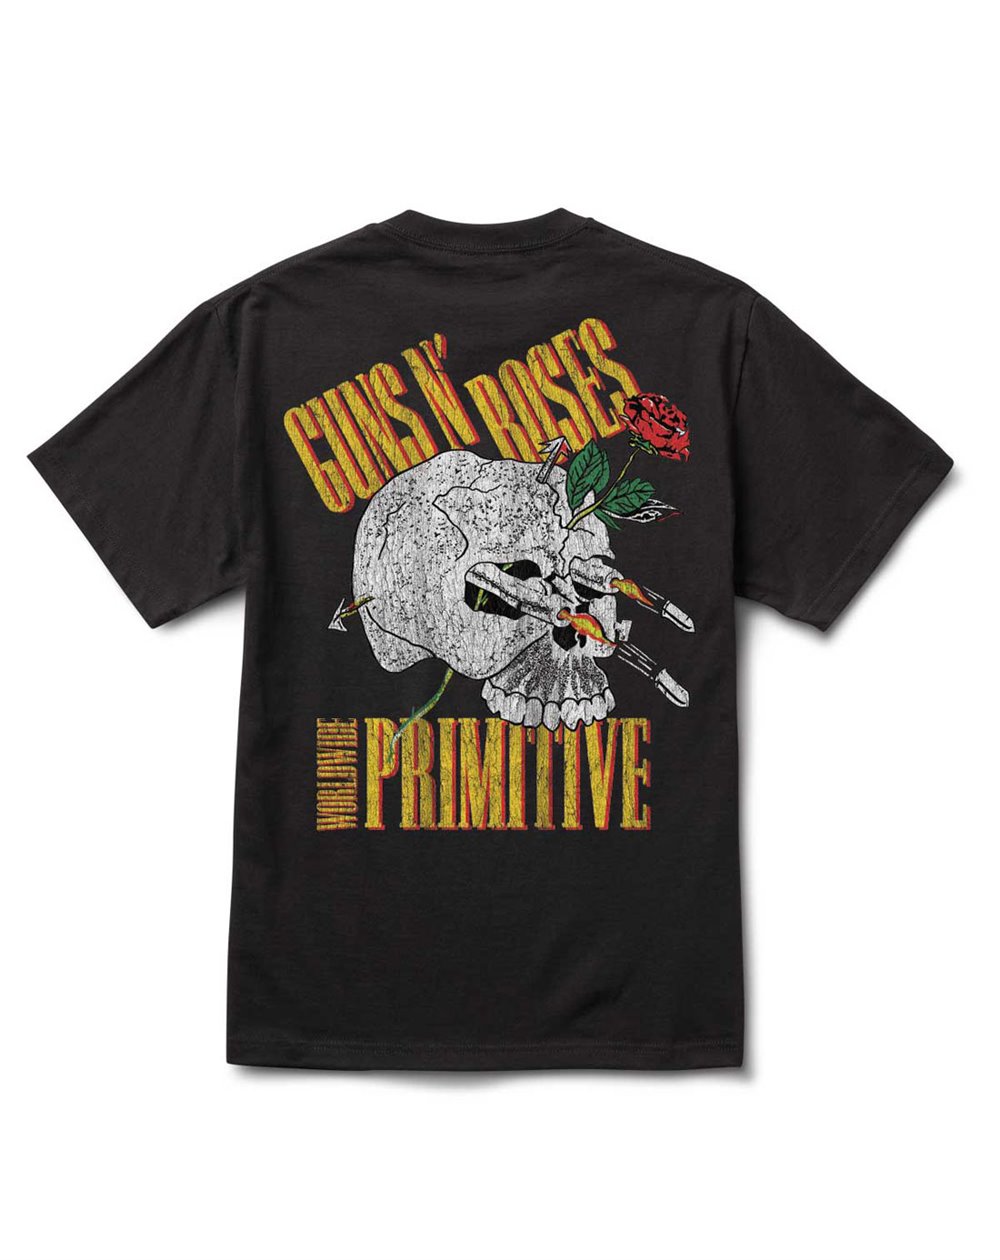 Primitive Guns n' Roses Nightrain Camiseta para Homem Black